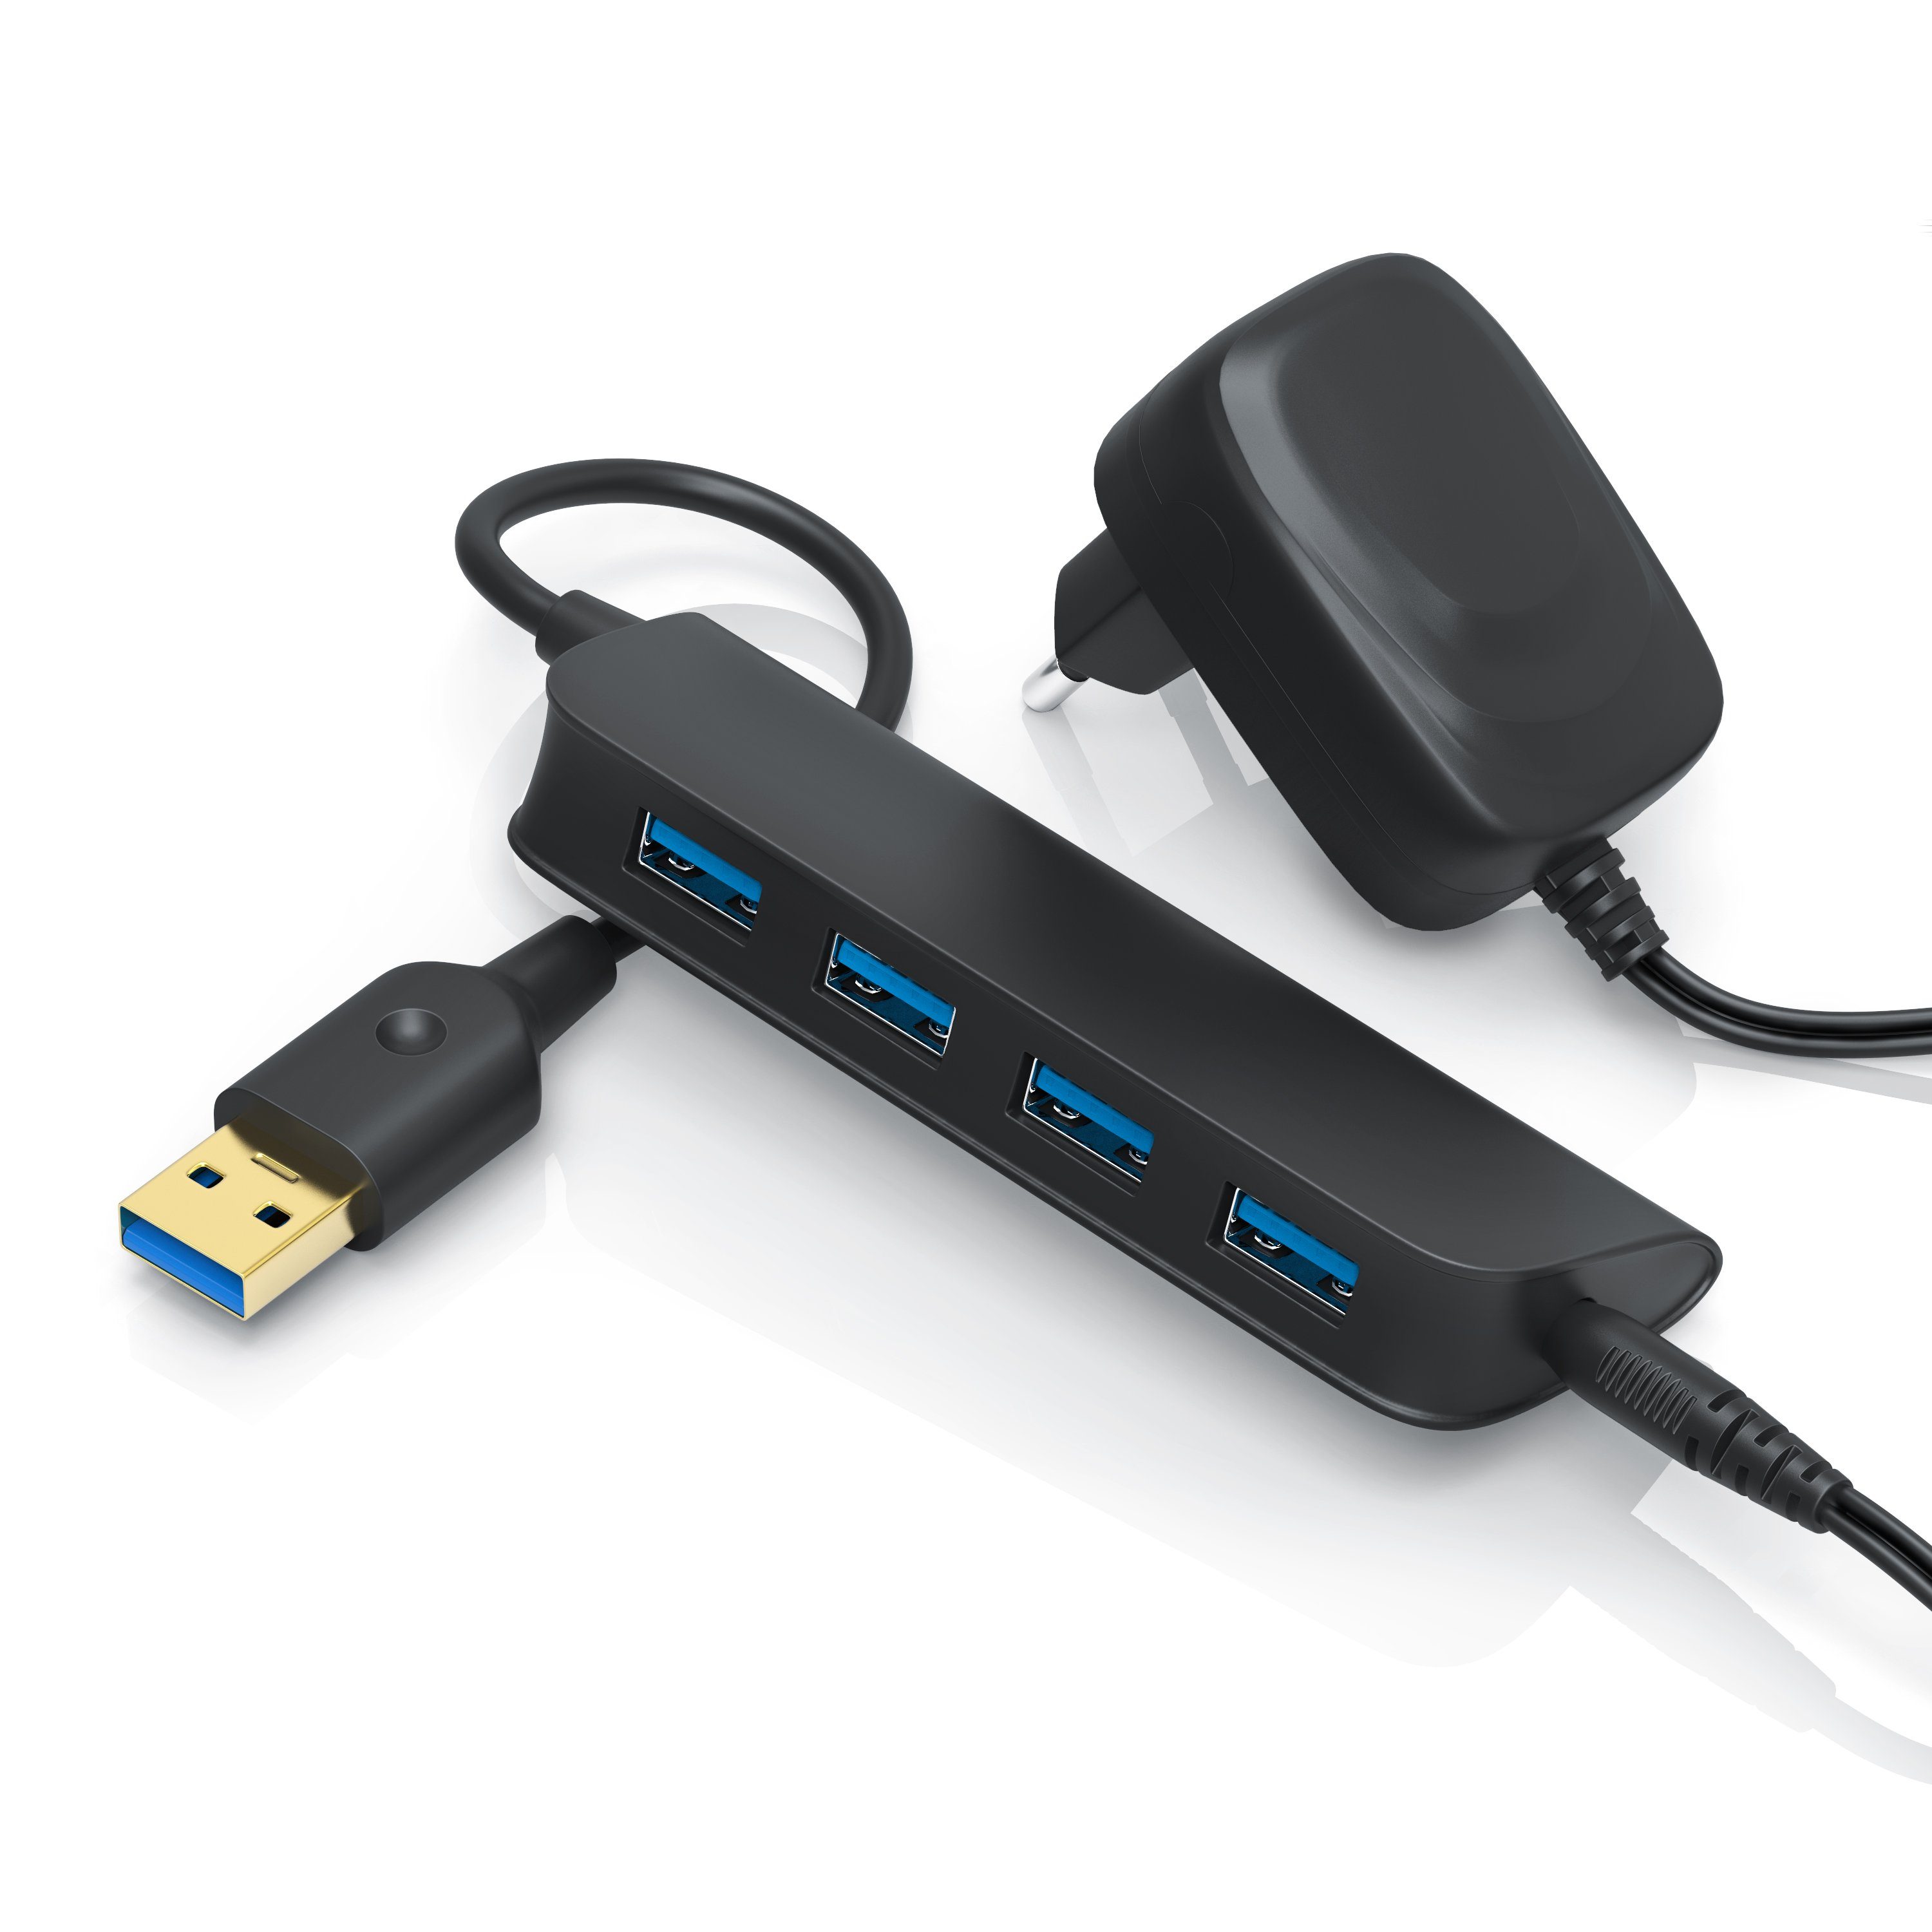 Primewire USB-Adapter, Slimline aktiver 4-Port USB 3.0 Hub mit Netzteil  sehr leicht / hohe Transportabilität online kaufen | OTTO